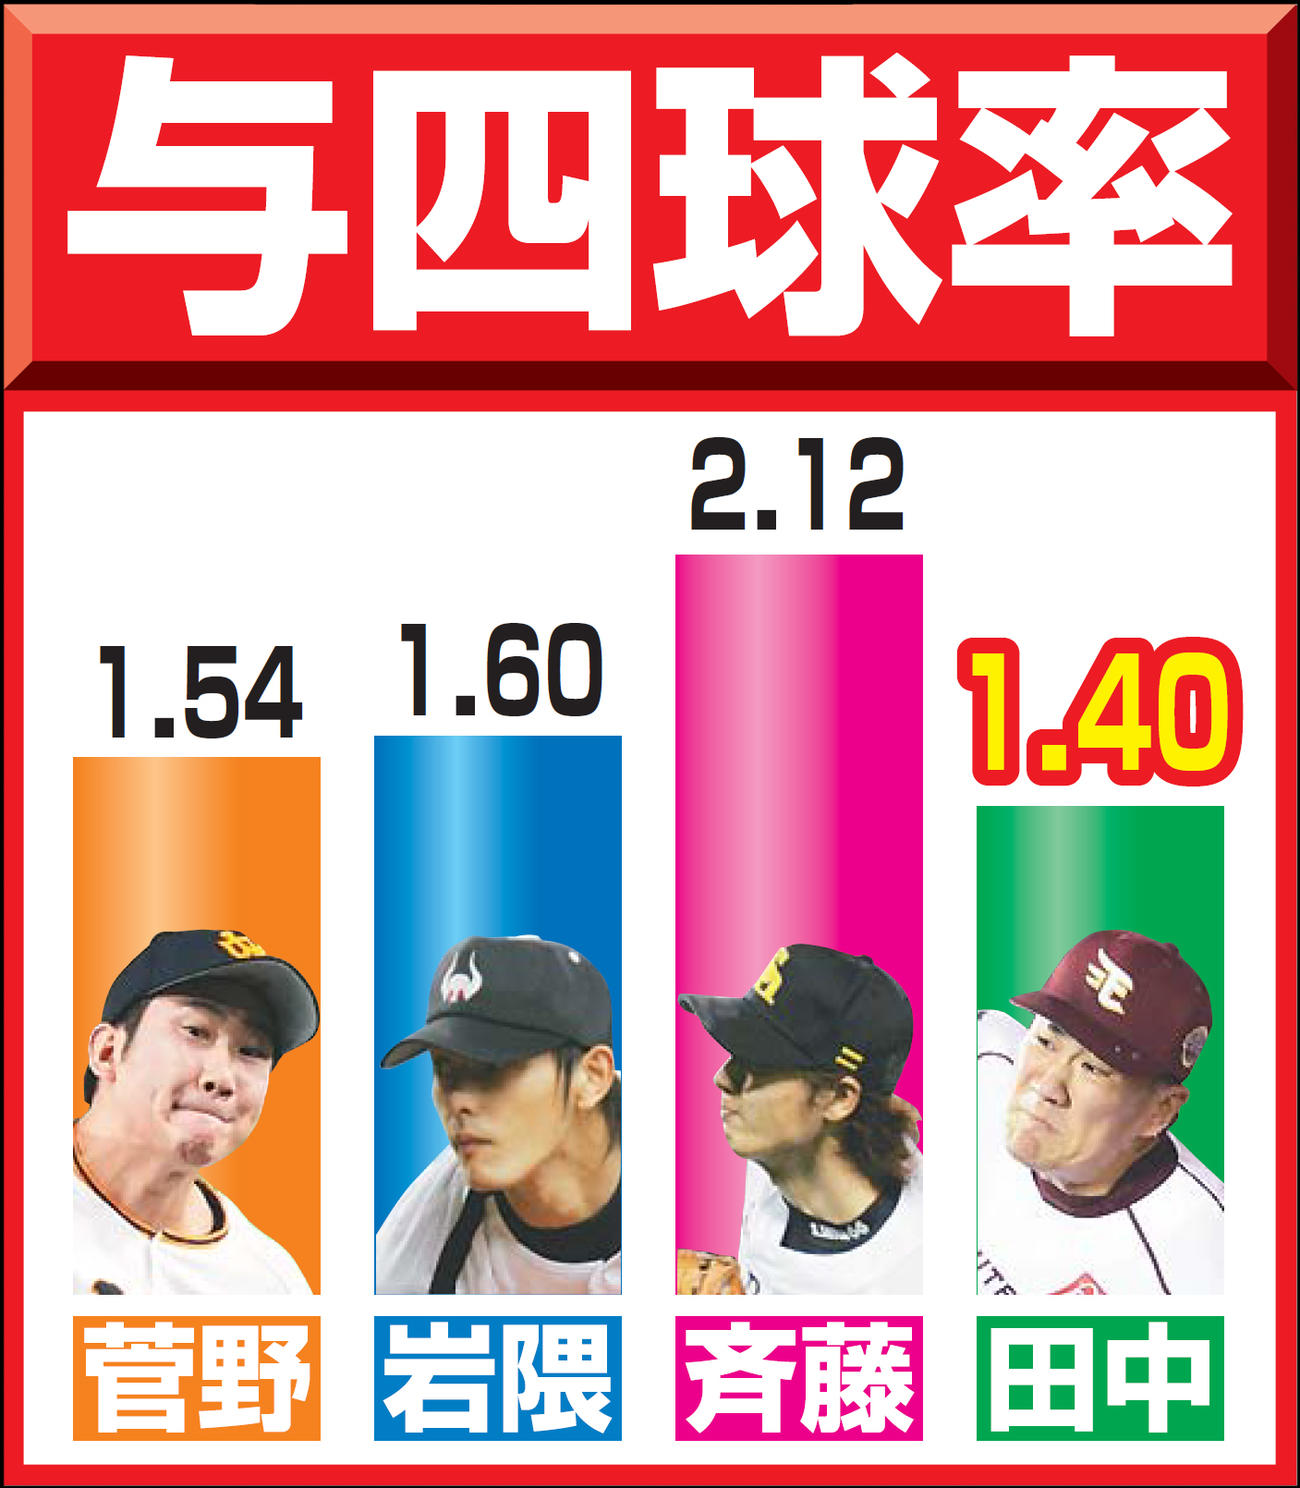 今季の巨人菅野、04年近鉄岩隈、05年ソフトバンク斉藤、13年楽天田中の与四球率の比較